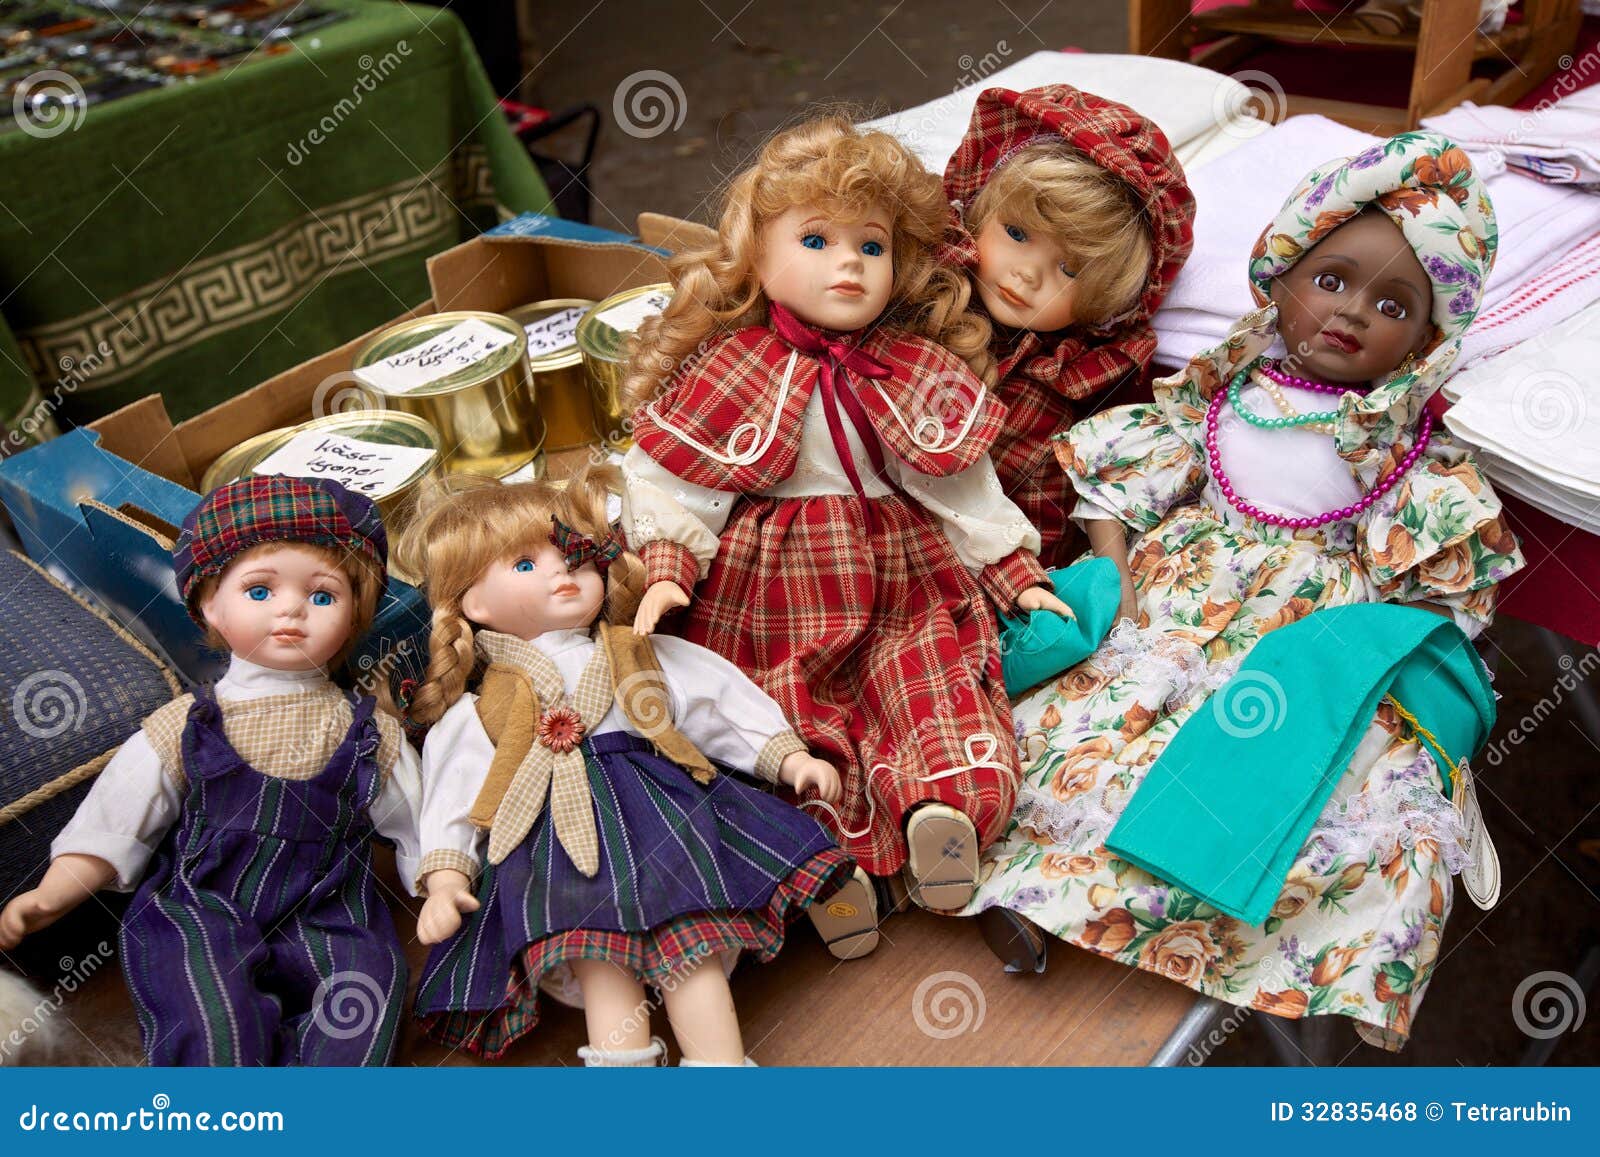 Dolls market hamper